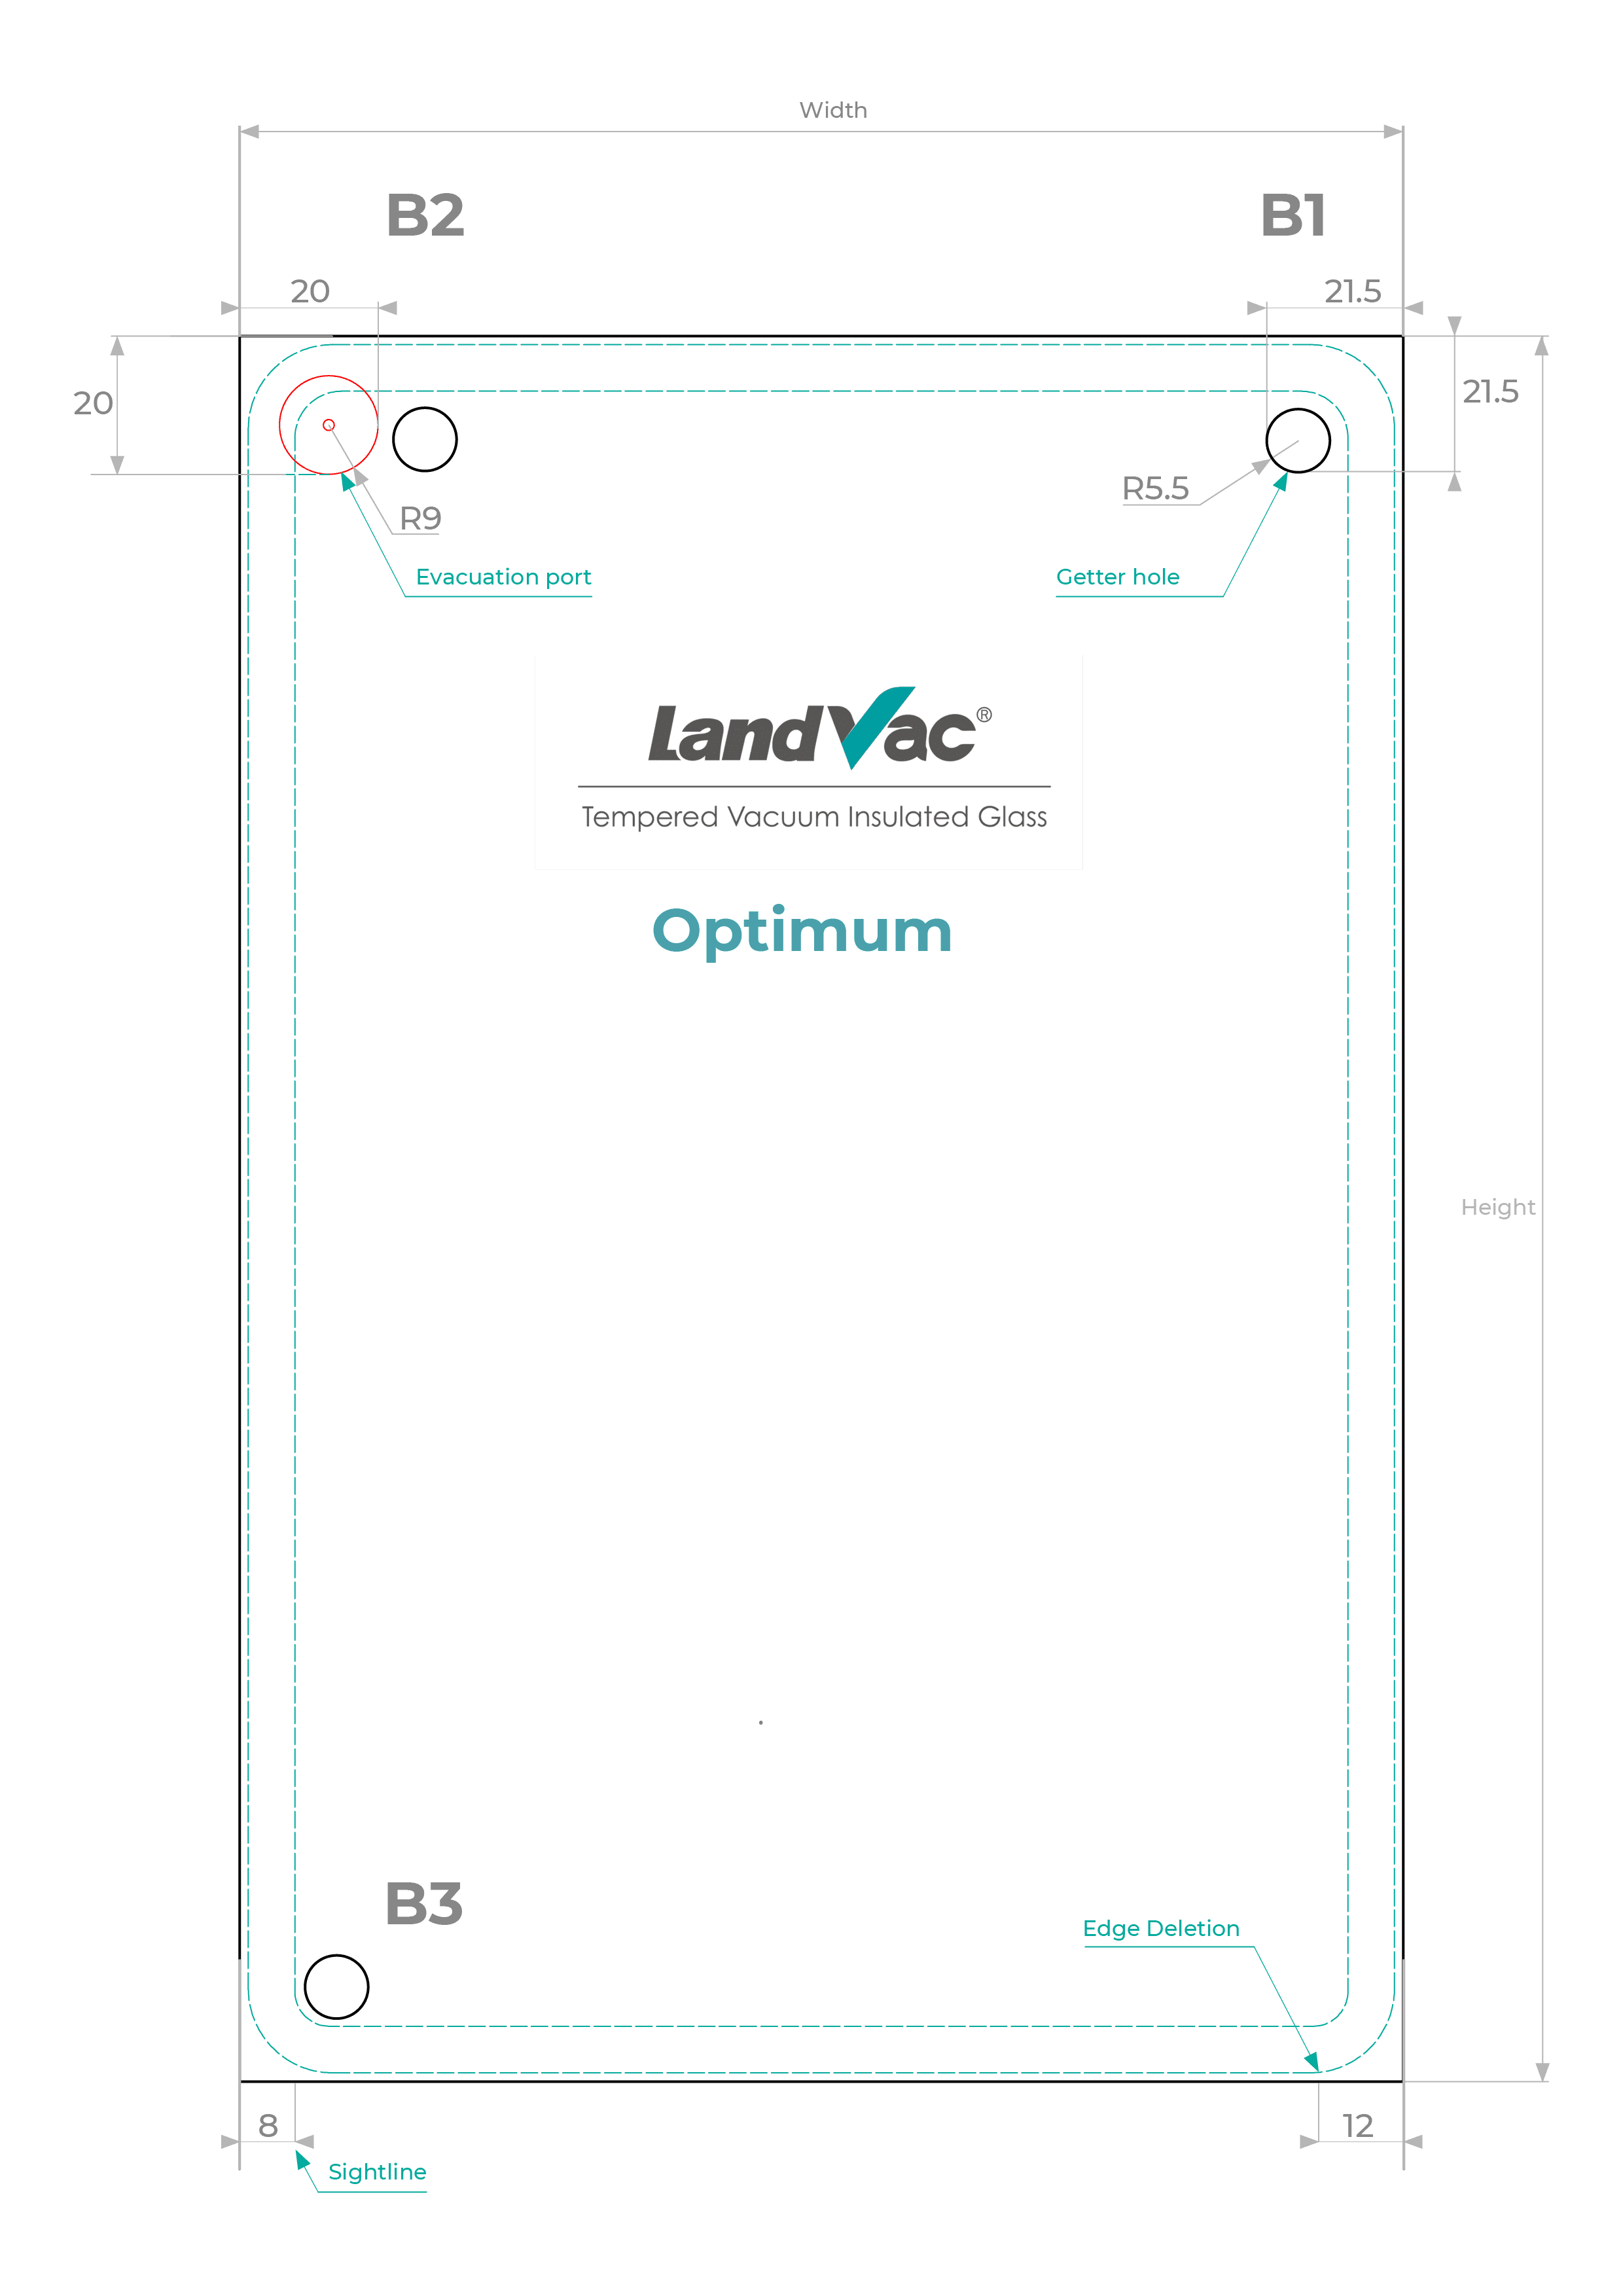 LandVac Optimum vacuum glazing cad diagram